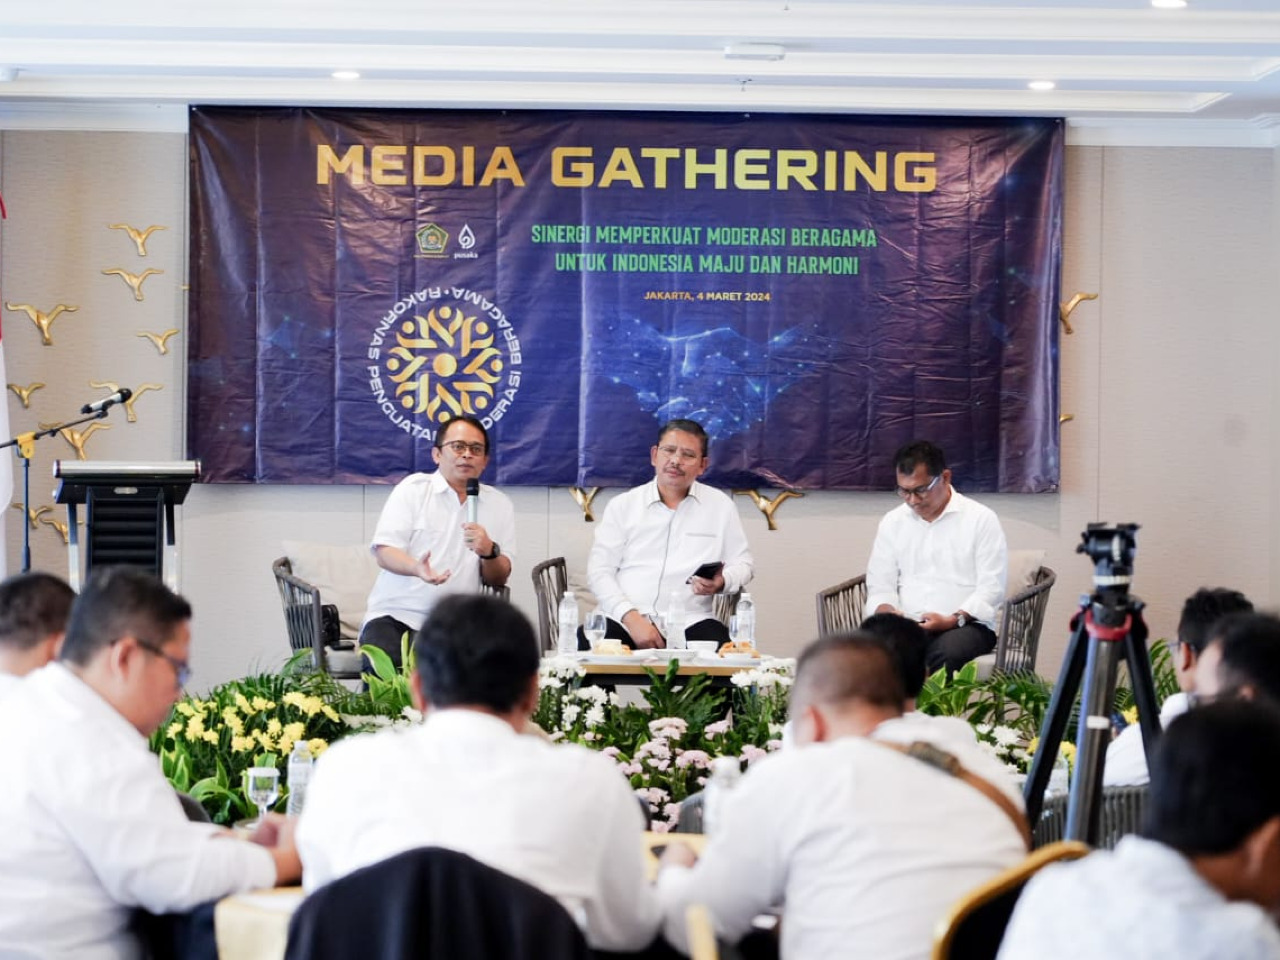 Stafsus Menteri Agama Soroti Penguatan Moderasi Beragama dalam Media Gathering

